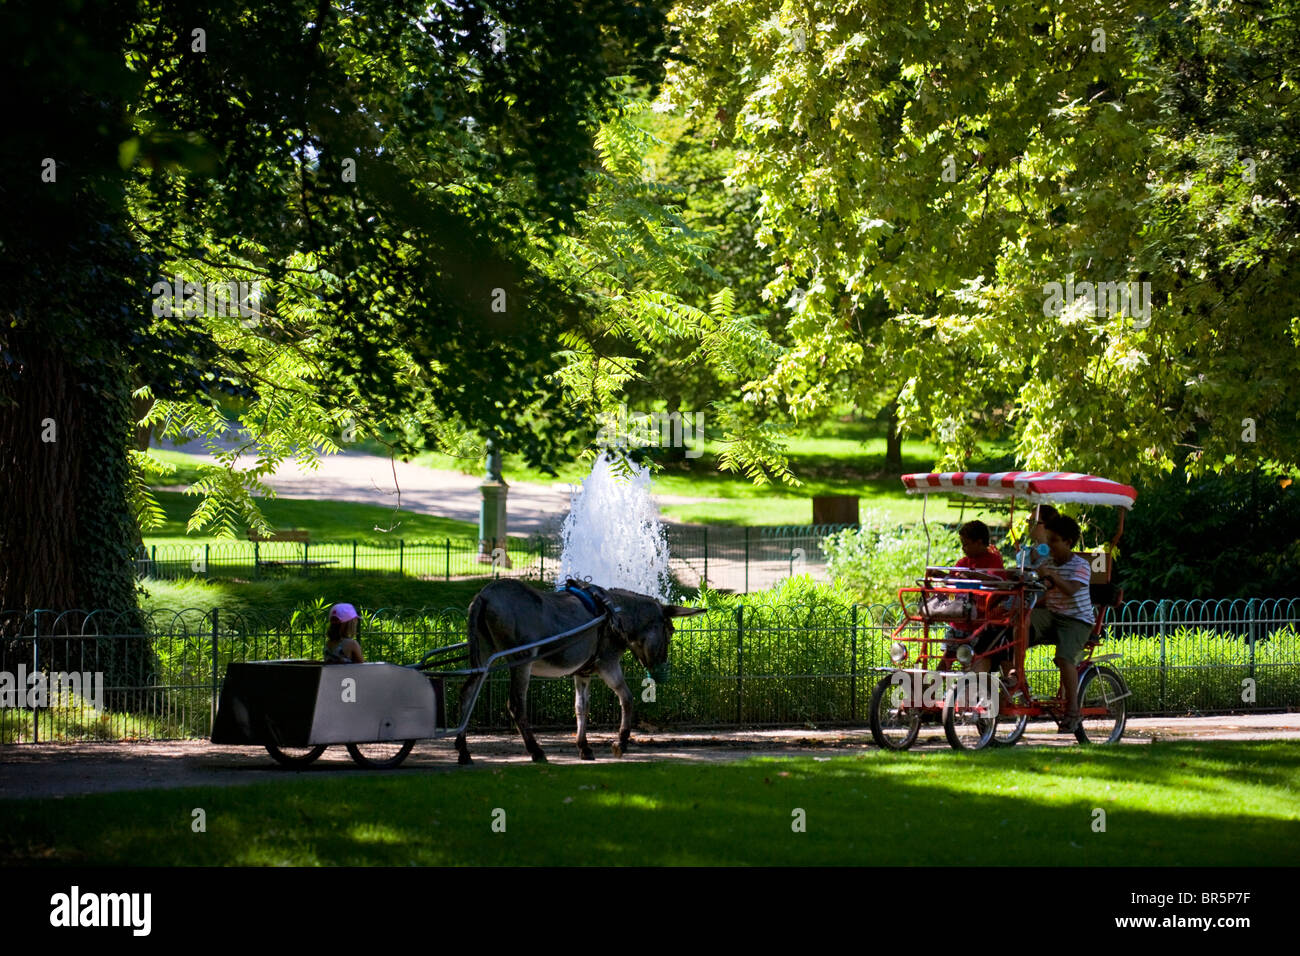 Une voiture à pédale et un panier dans l'un des parcs de Vichy (Allier - France). Rosalie et carriole dans un des parcs de Vichy (France). Banque D'Images